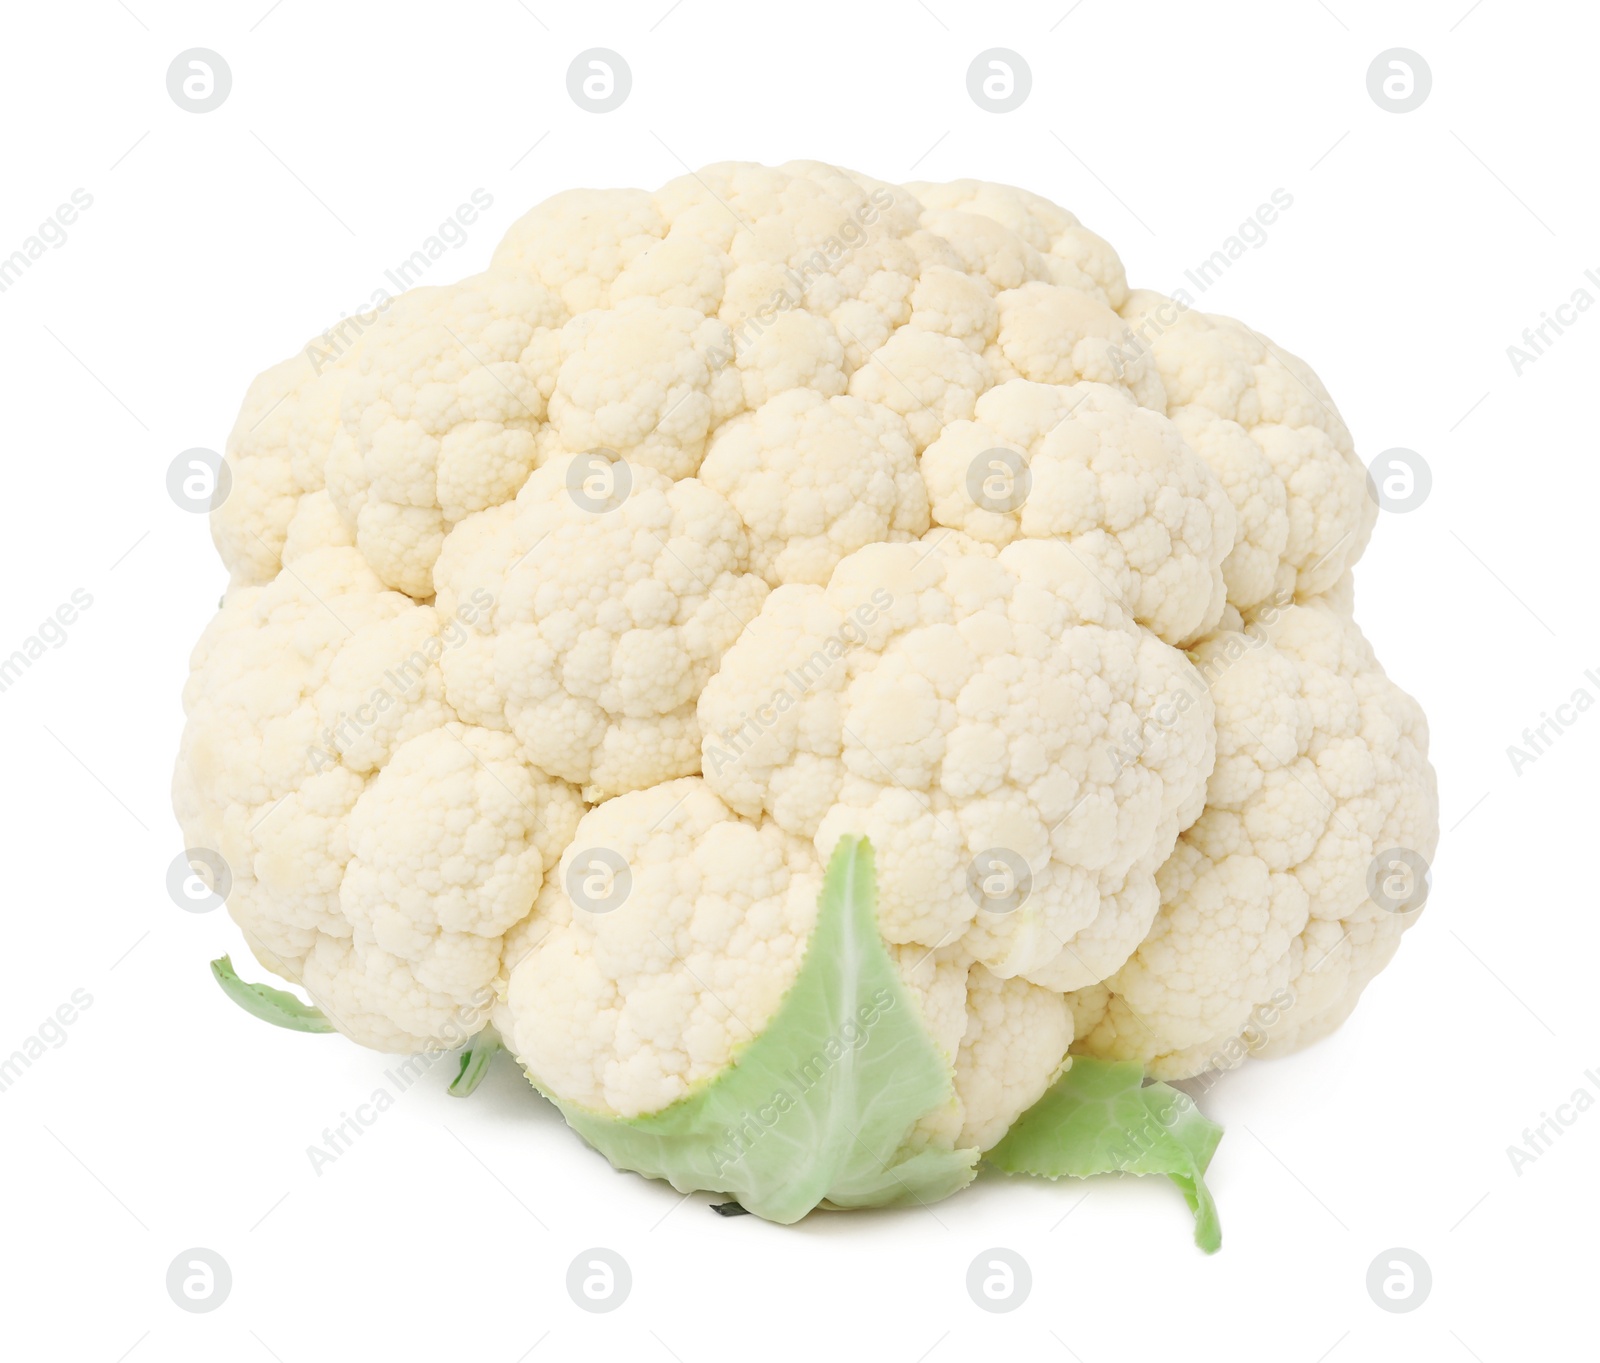 Photo of Whole fresh raw cauliflower isolated on white